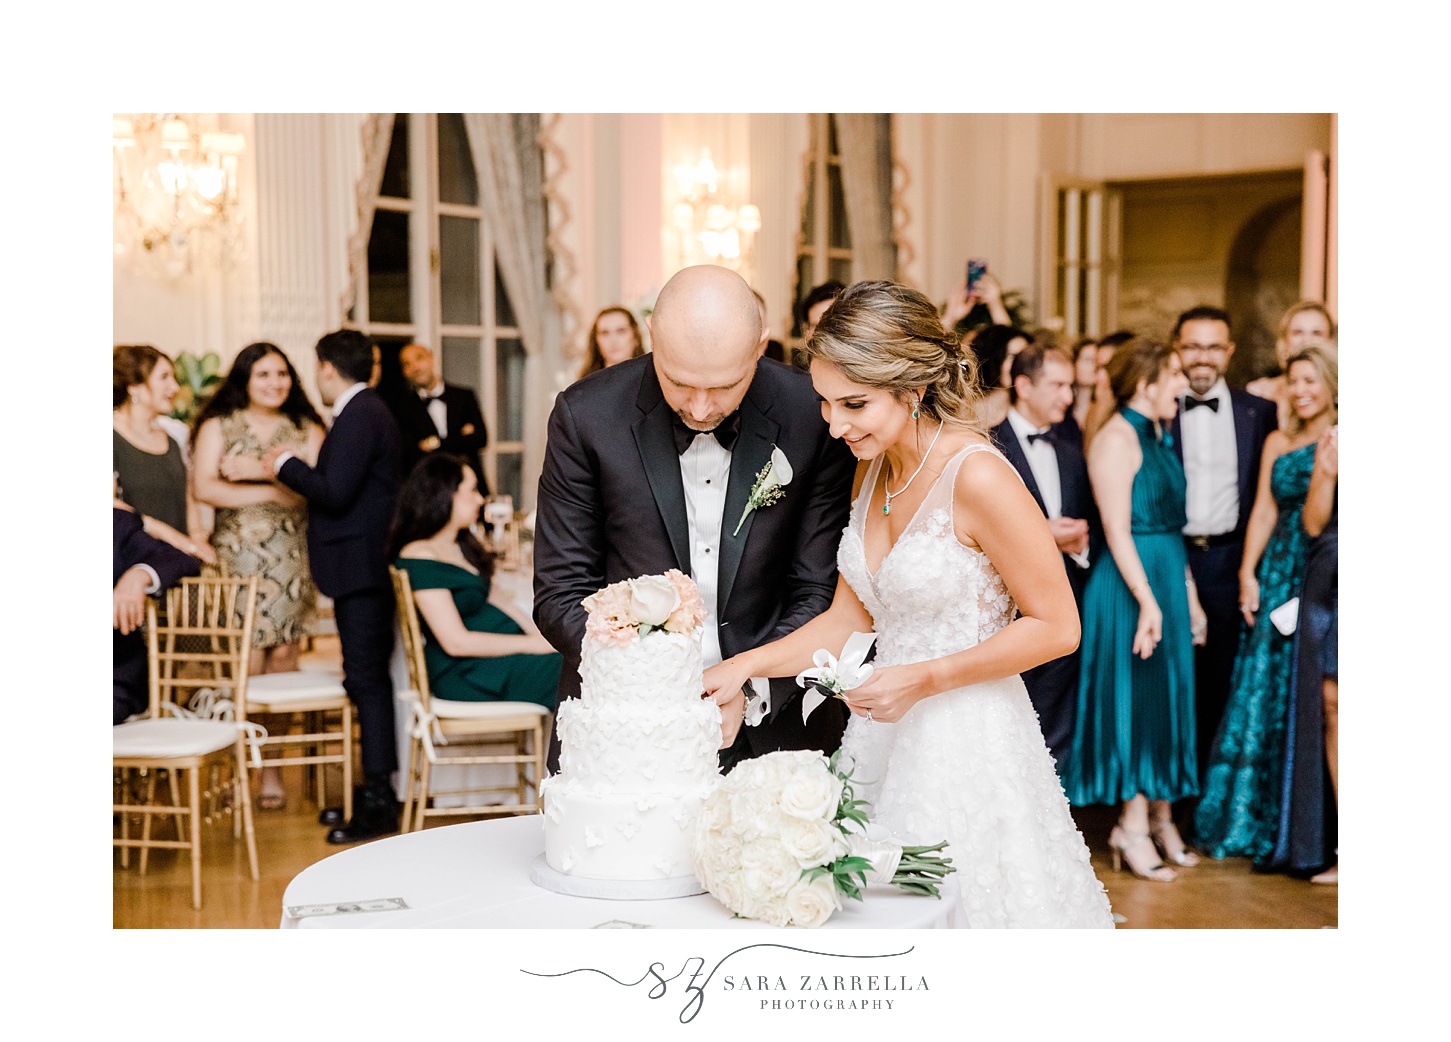 newlyweds cut wedding cake at Newport RI mansion wedding reception